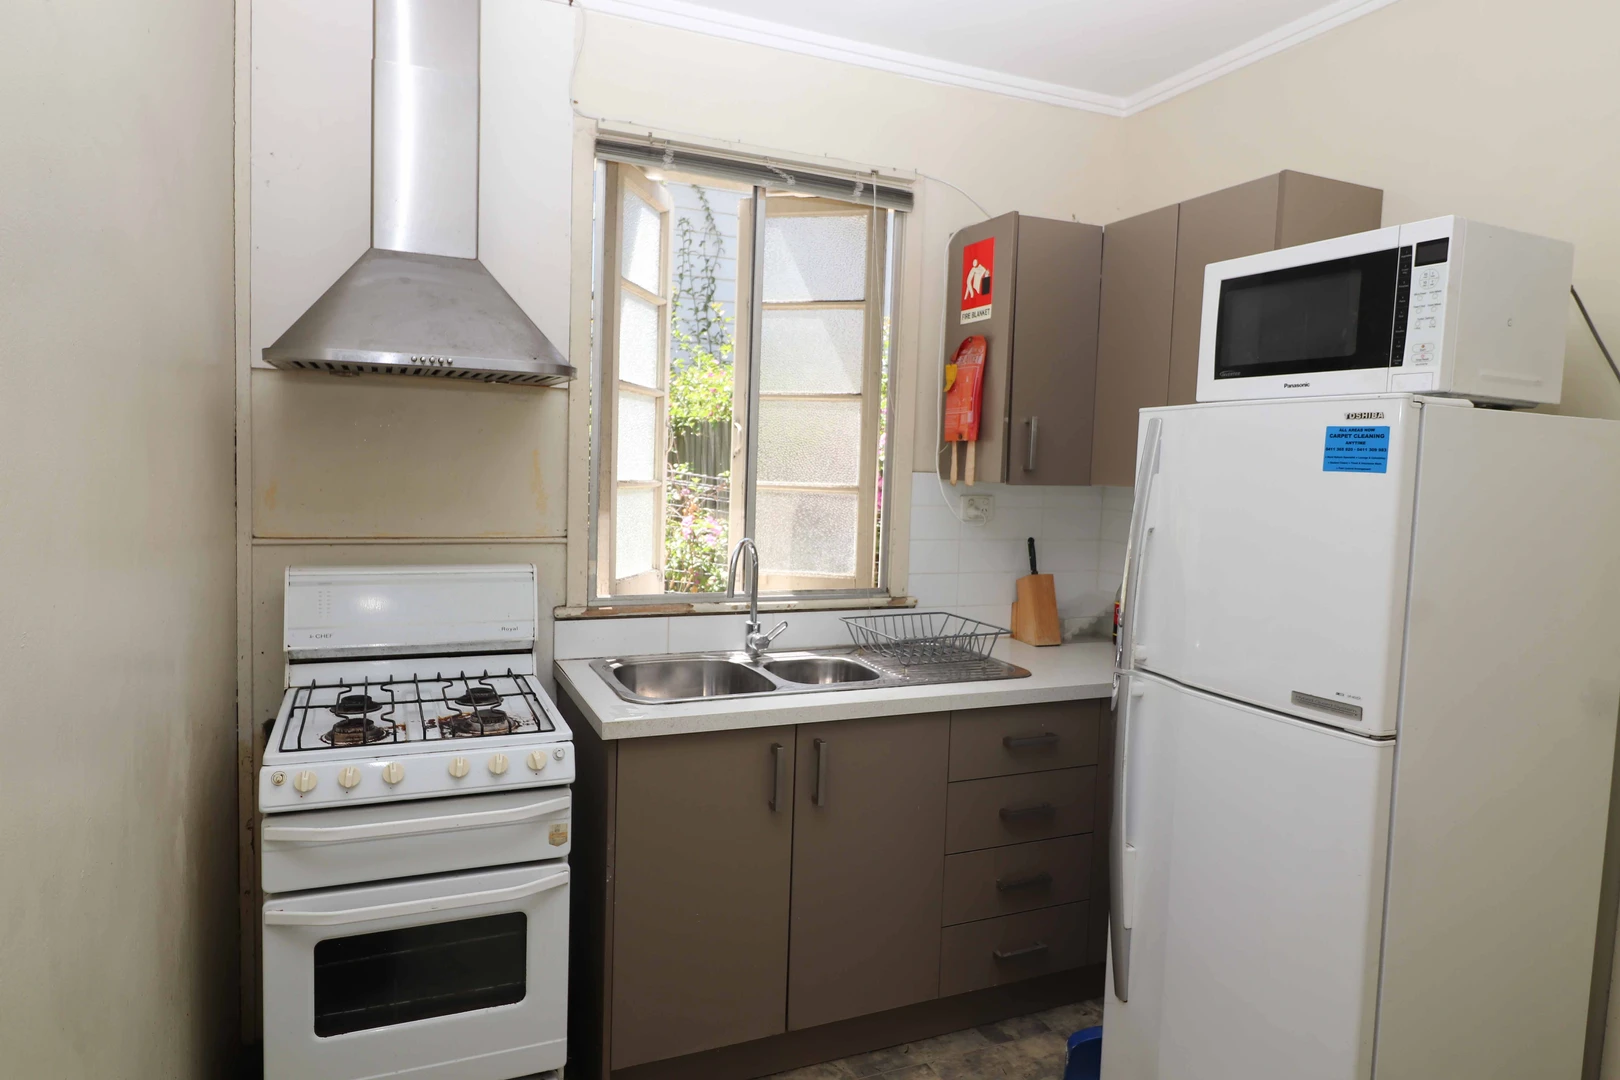 Moderne und helle Wohnung in Brisbane